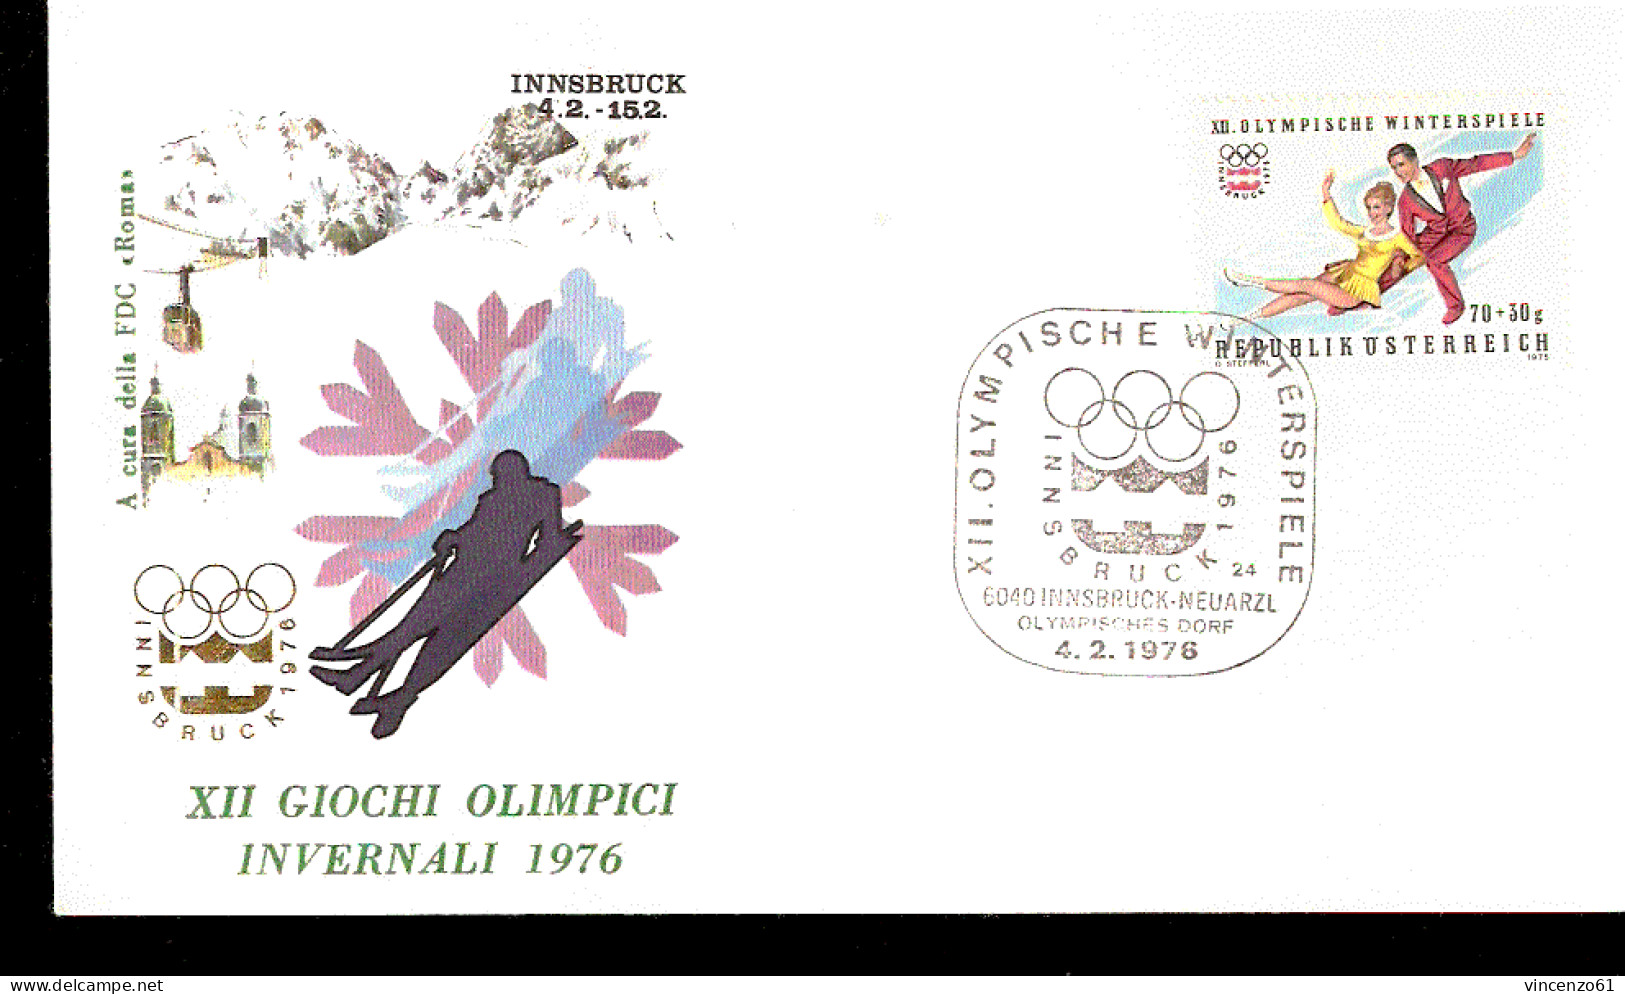 XII GIOCHI OLIMPICI DI INNSBRUCK 1976 SCI PATTINAGGIO ARTISTICO - Winter 1976: Innsbruck